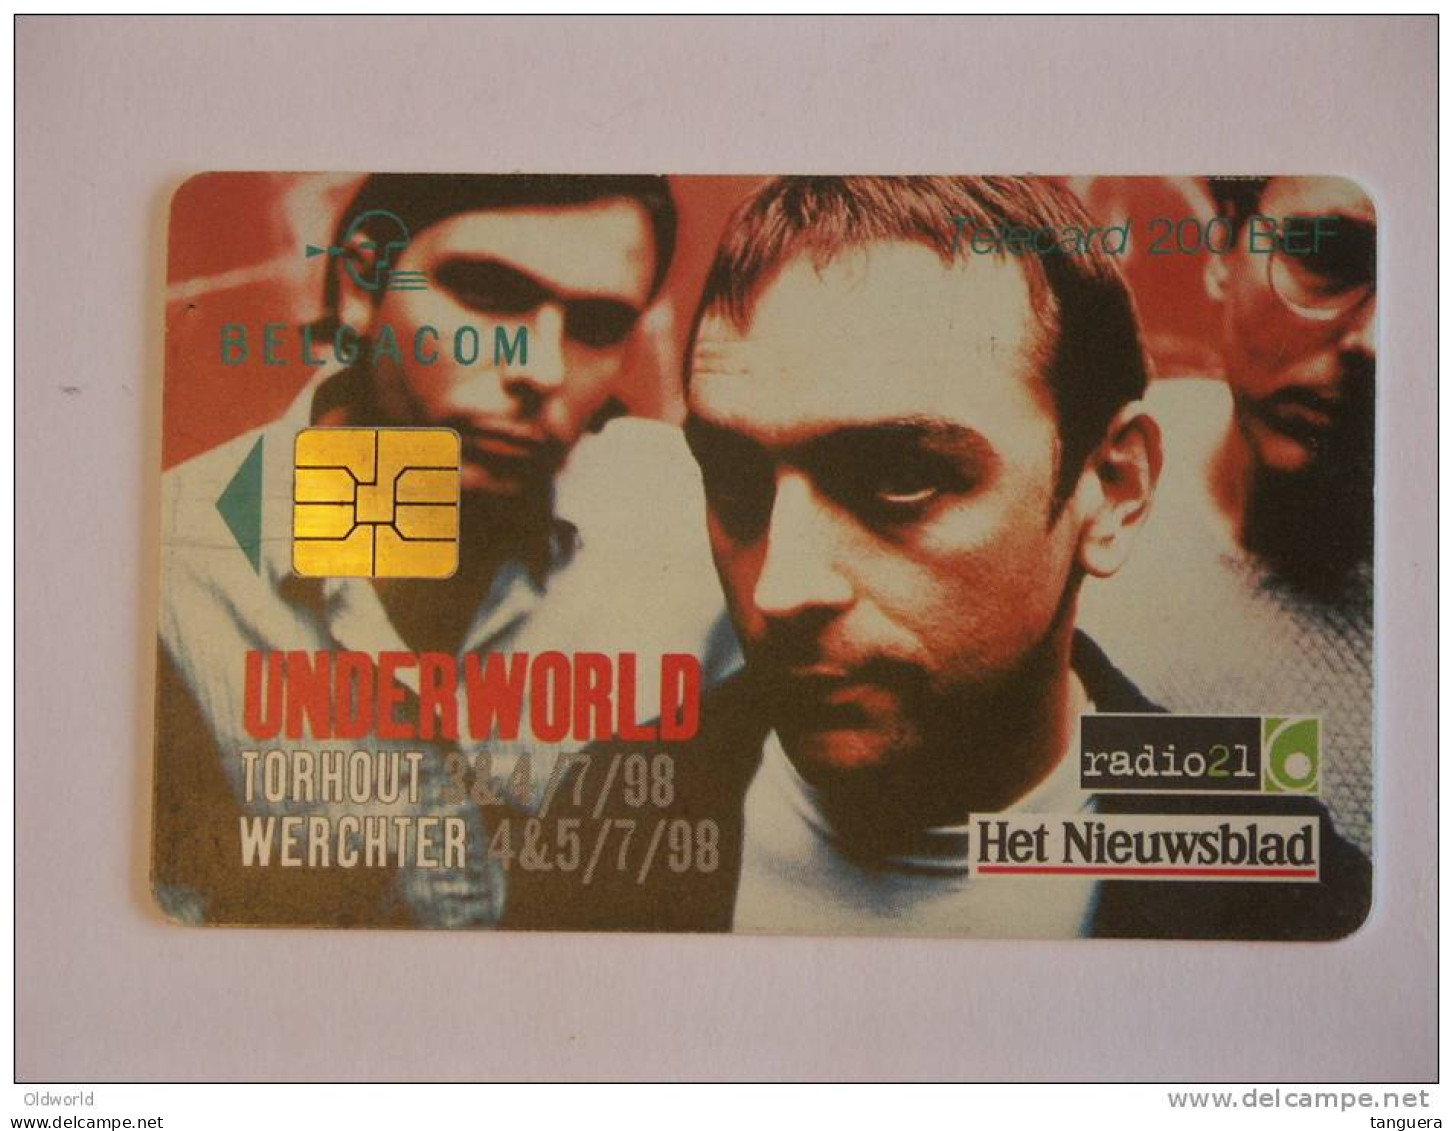 Telefoonkaart Telecard Belgacom Belgique België TW Underworld 1998 - Con Chip